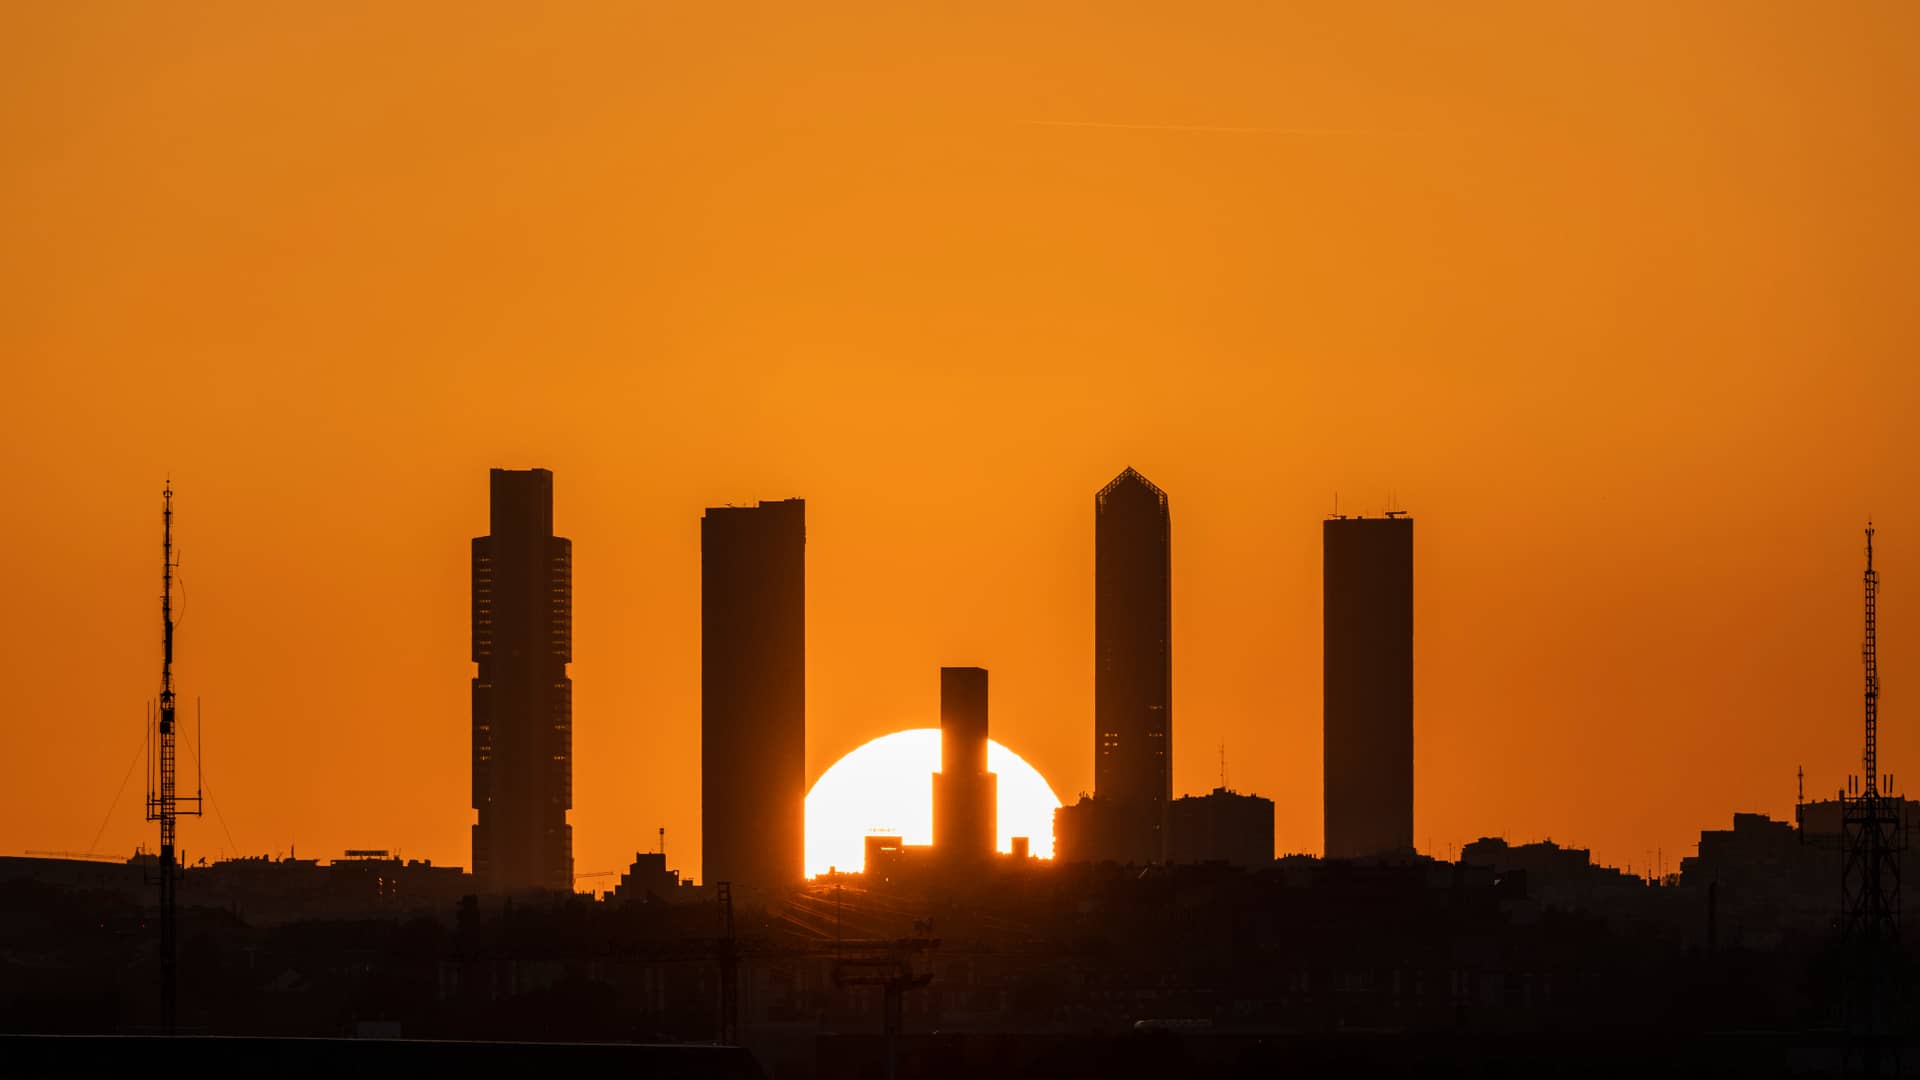 Puesta de sol con un cielo anaranjado por la calima, se aprecia el skyline de Madrid, en nuestro mapa podrás ver el índice solar de radiación de España para una instalación de energía solar más eficiente 